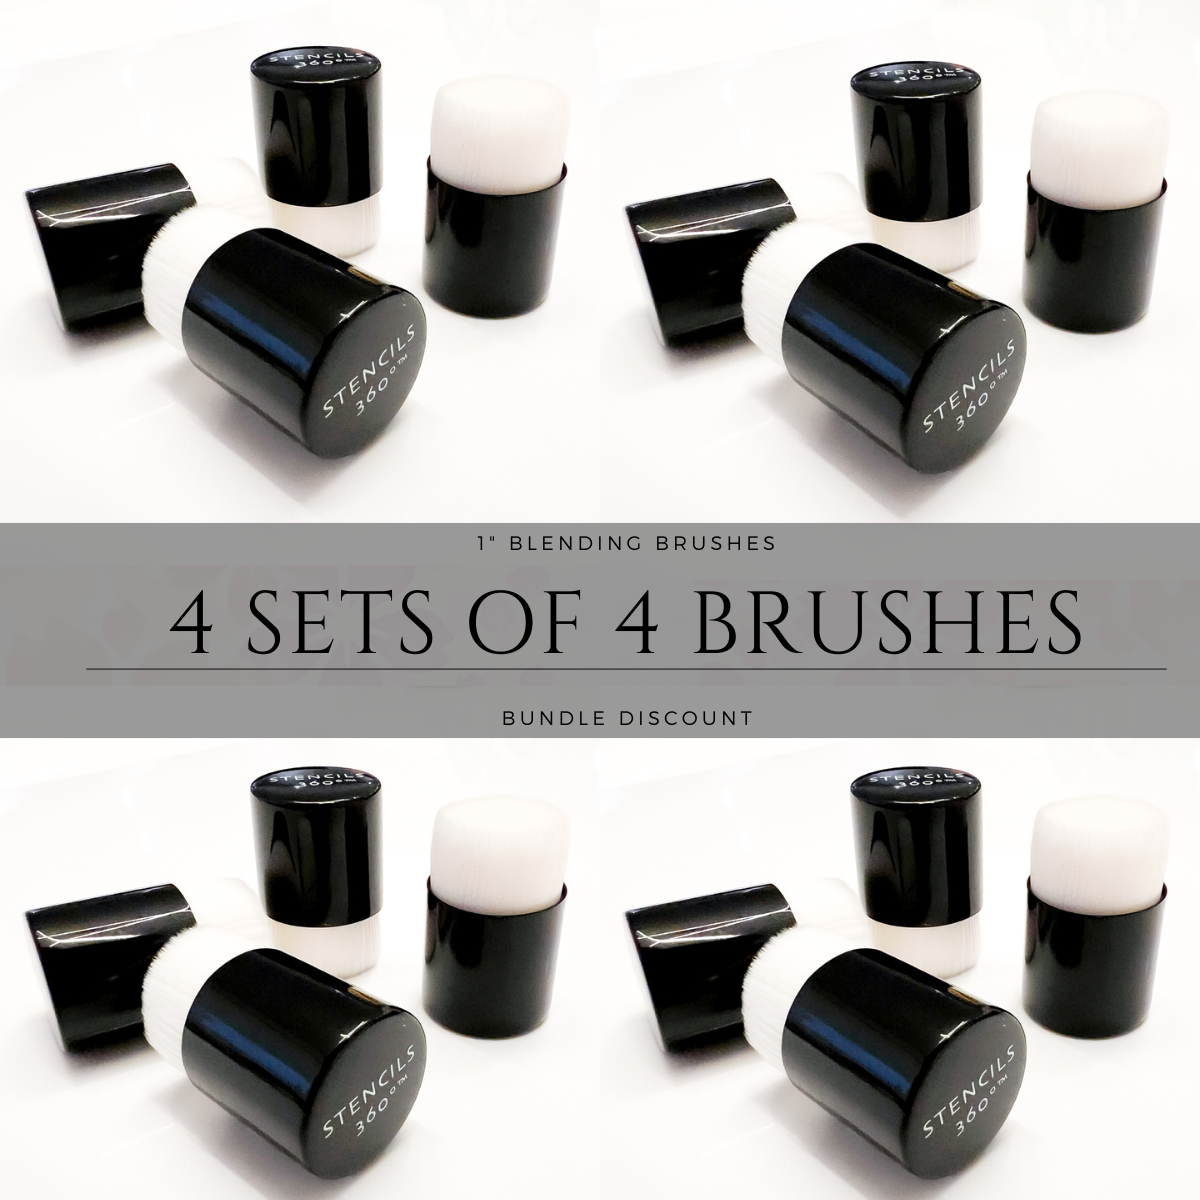 1" Blending Brush Bundle (4 Sets of 4 Brushes)